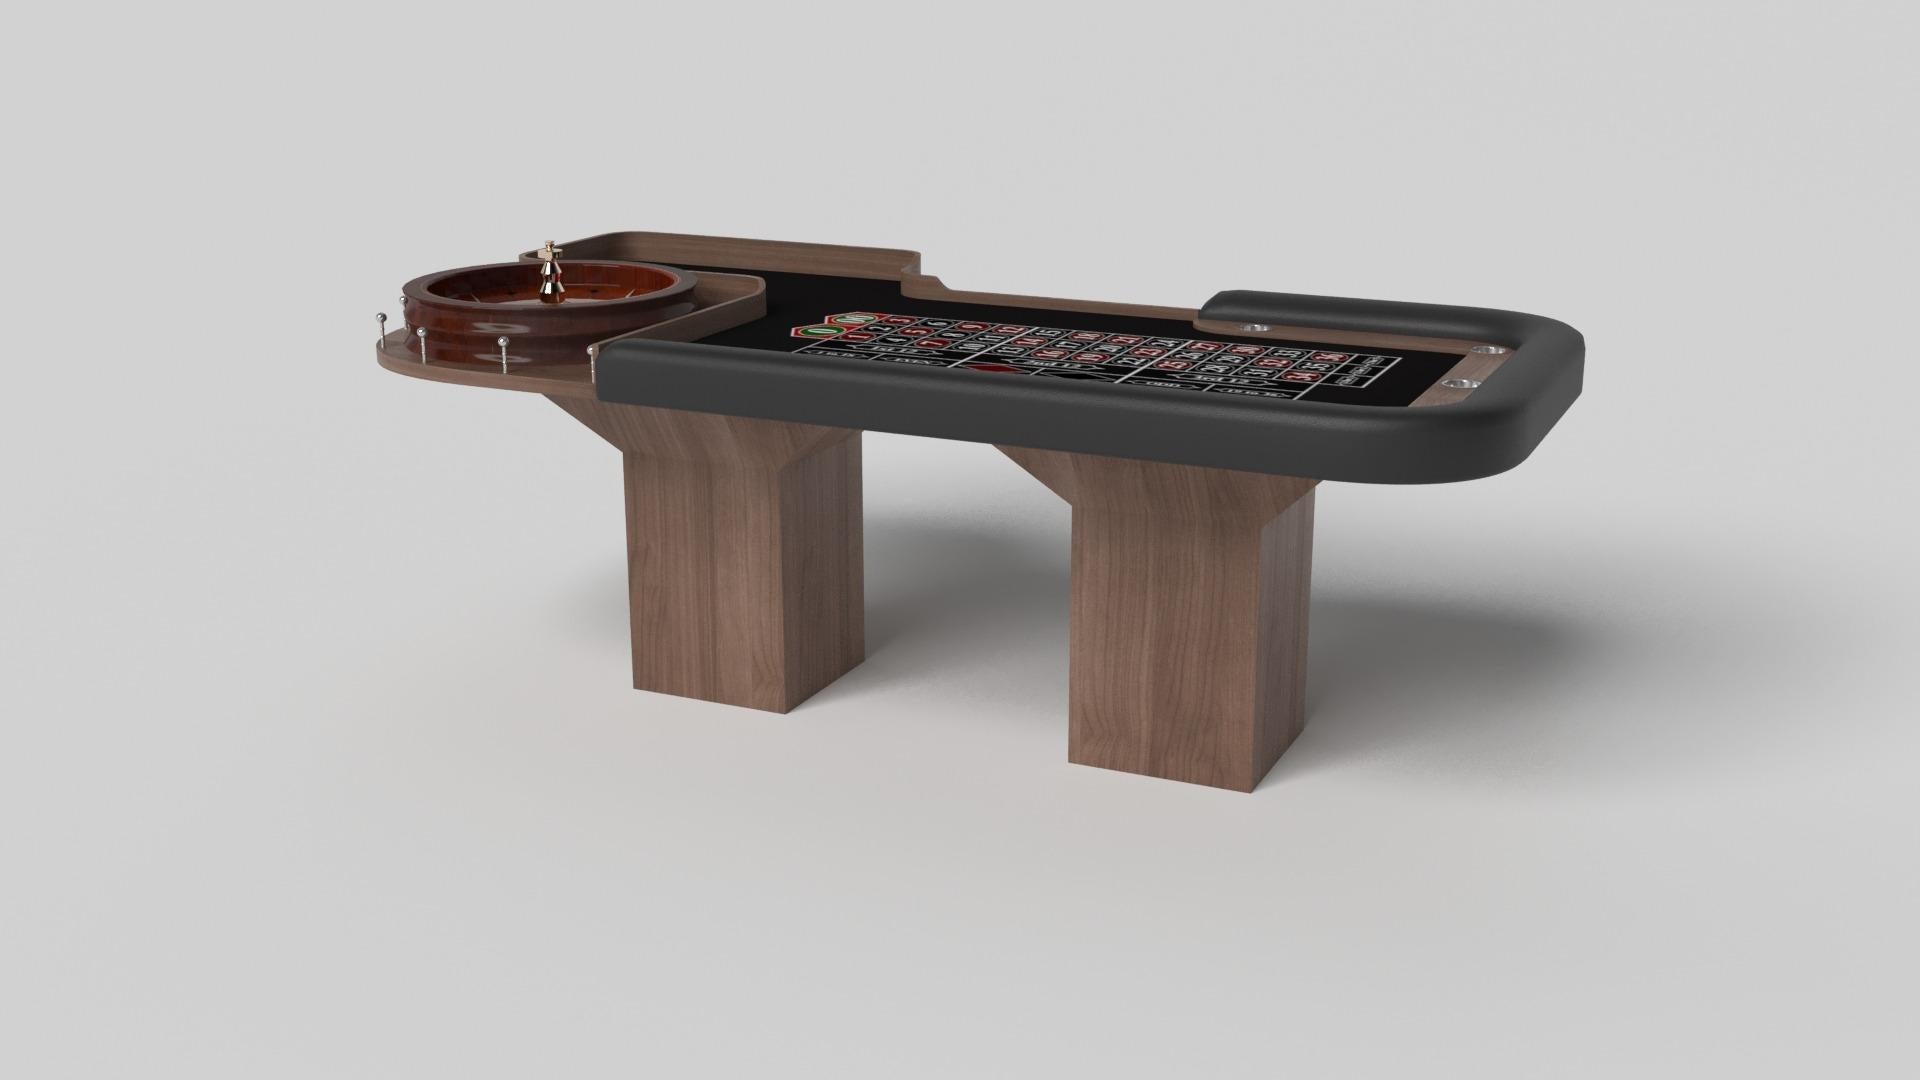 Le design minimaliste rencontre l'élégance opulente dans la table de roulette Trestle. Détaillée avec une surface professionnelle pour des jeux sans fin, cette table contemporaine est fabriquée de manière experte. Les pieds carrés lui confèrent un